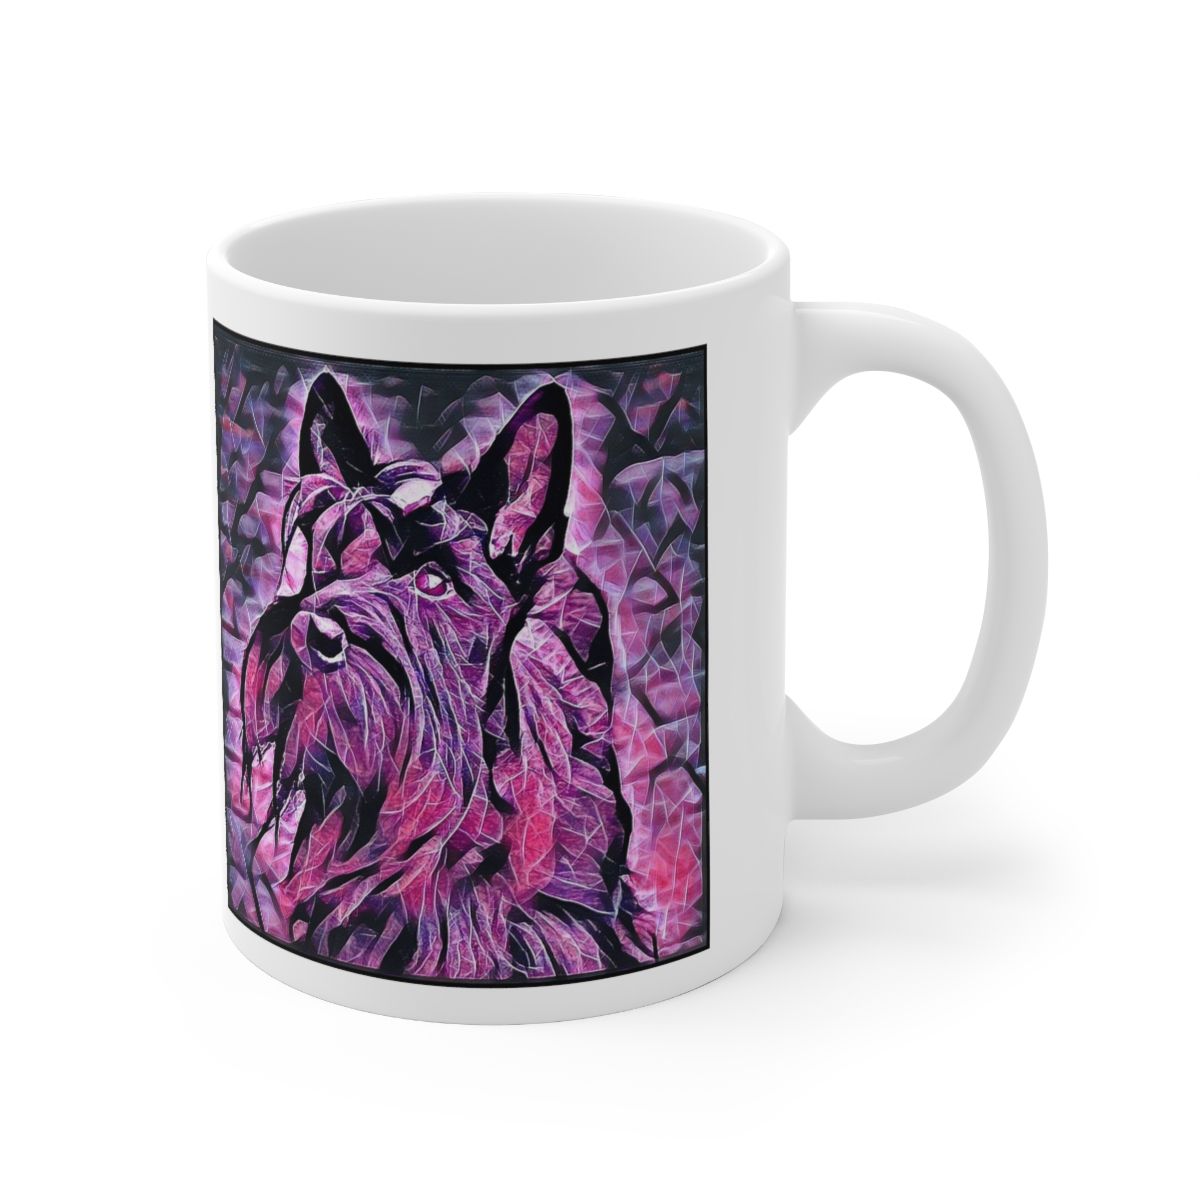 Picture of Scottish Terrier-Violet Femmes Mug